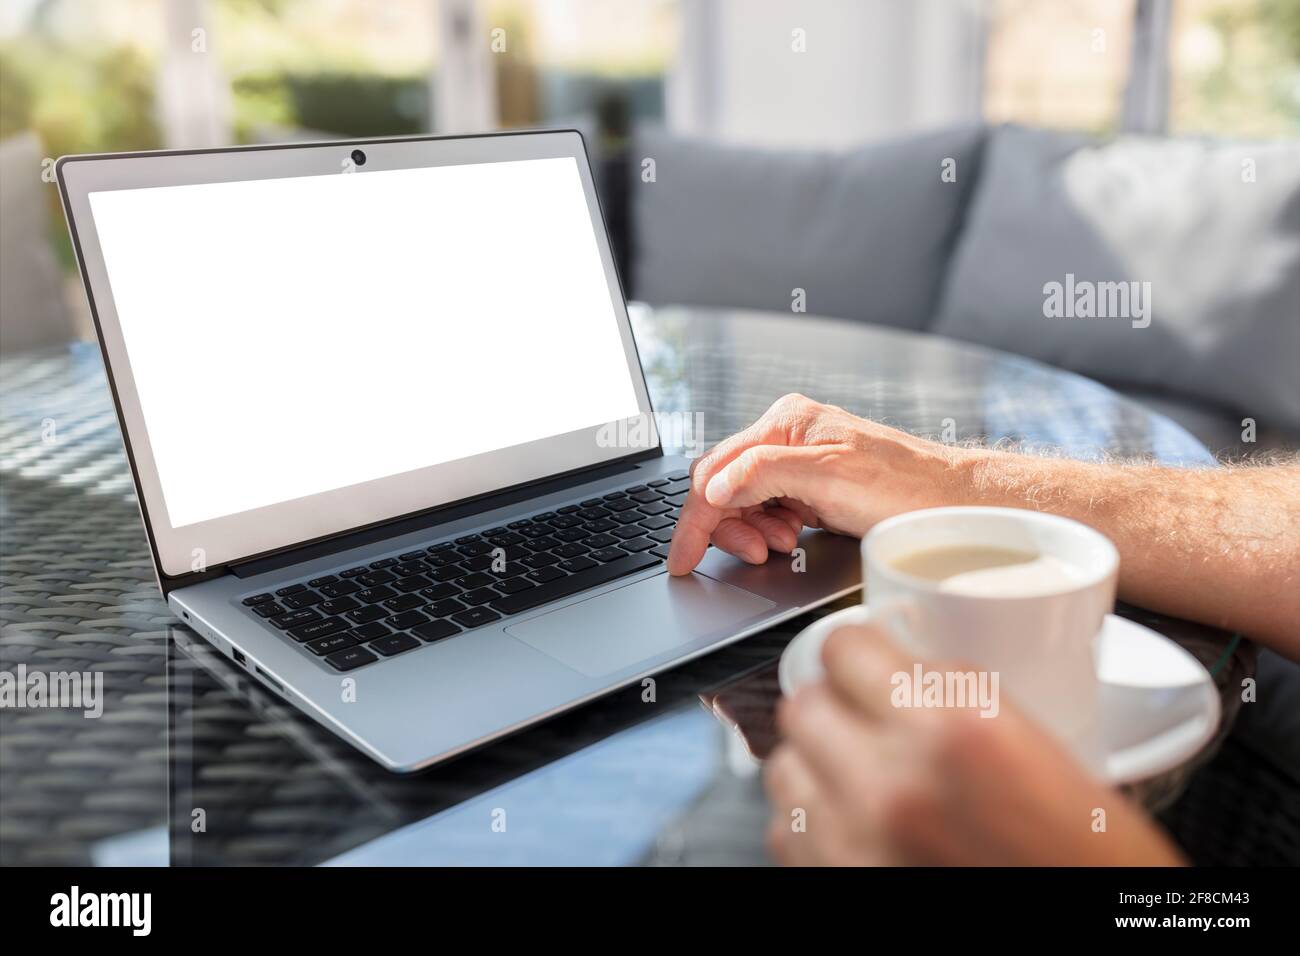 Hombre con ordenador portátil en el escritorio trabajando en la cafetería o. oficina con pantalla en blanco Foto de stock